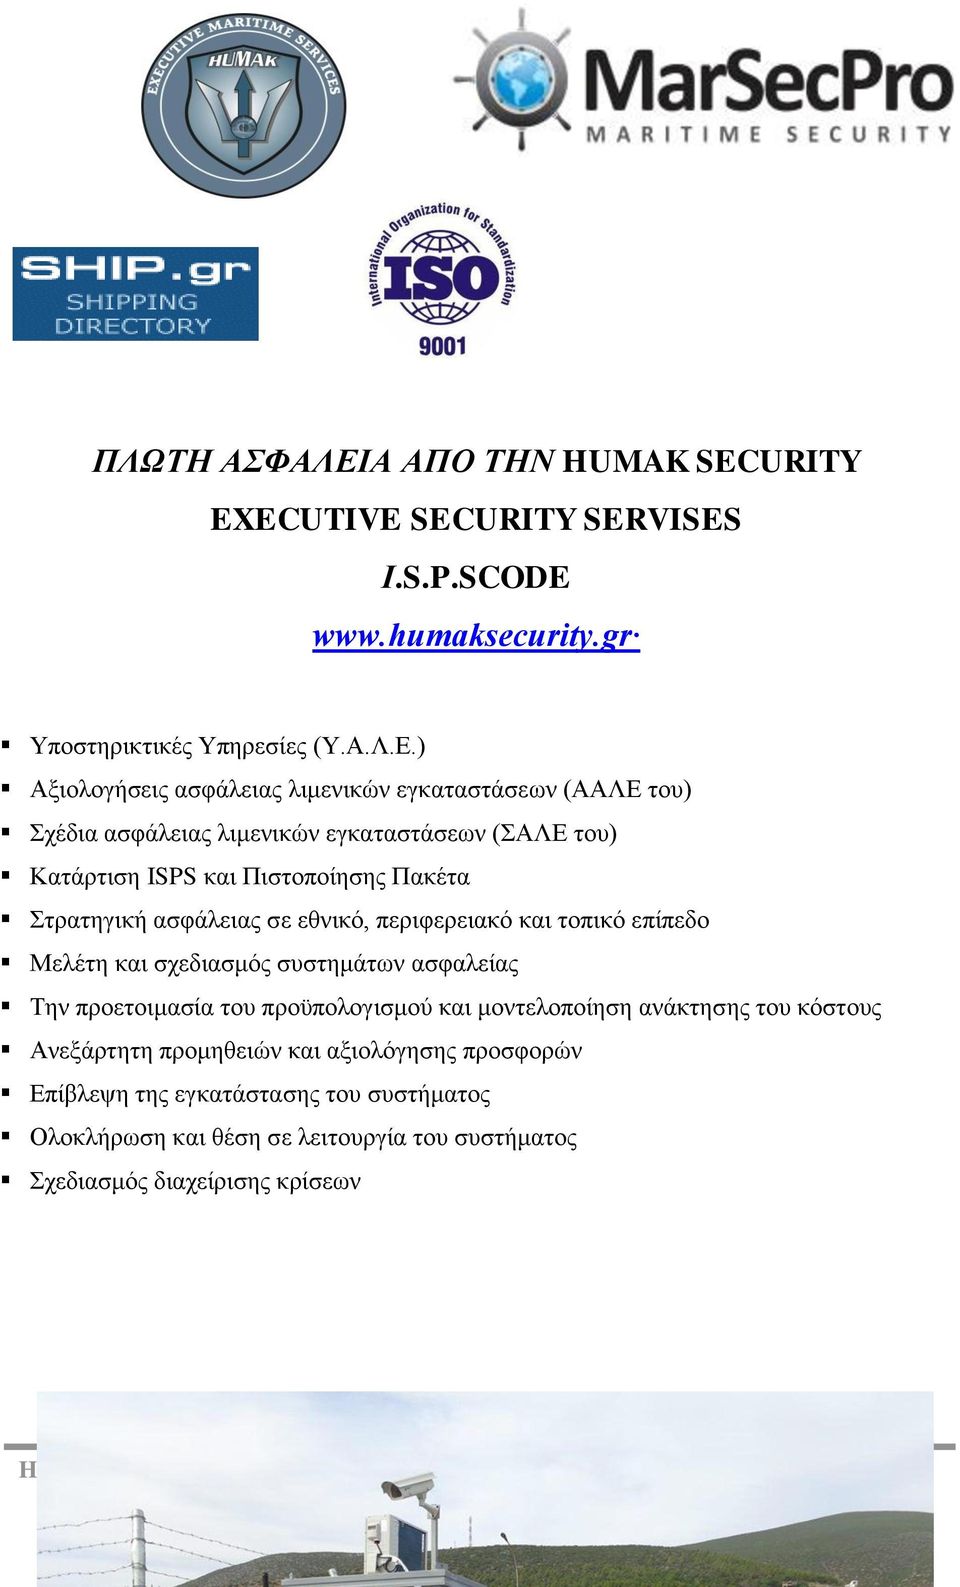 ) Αξιολογήσεις ασφάλειας λιμενικών εγκαταστάσεων (ΑΑΛΕ του) Σχέδια ασφάλειας λιμενικών εγκαταστάσεων (ΣΑΛΕ του) Κατάρτιση ISPS και Πιστοποίησης Πακέτα Στρατηγική